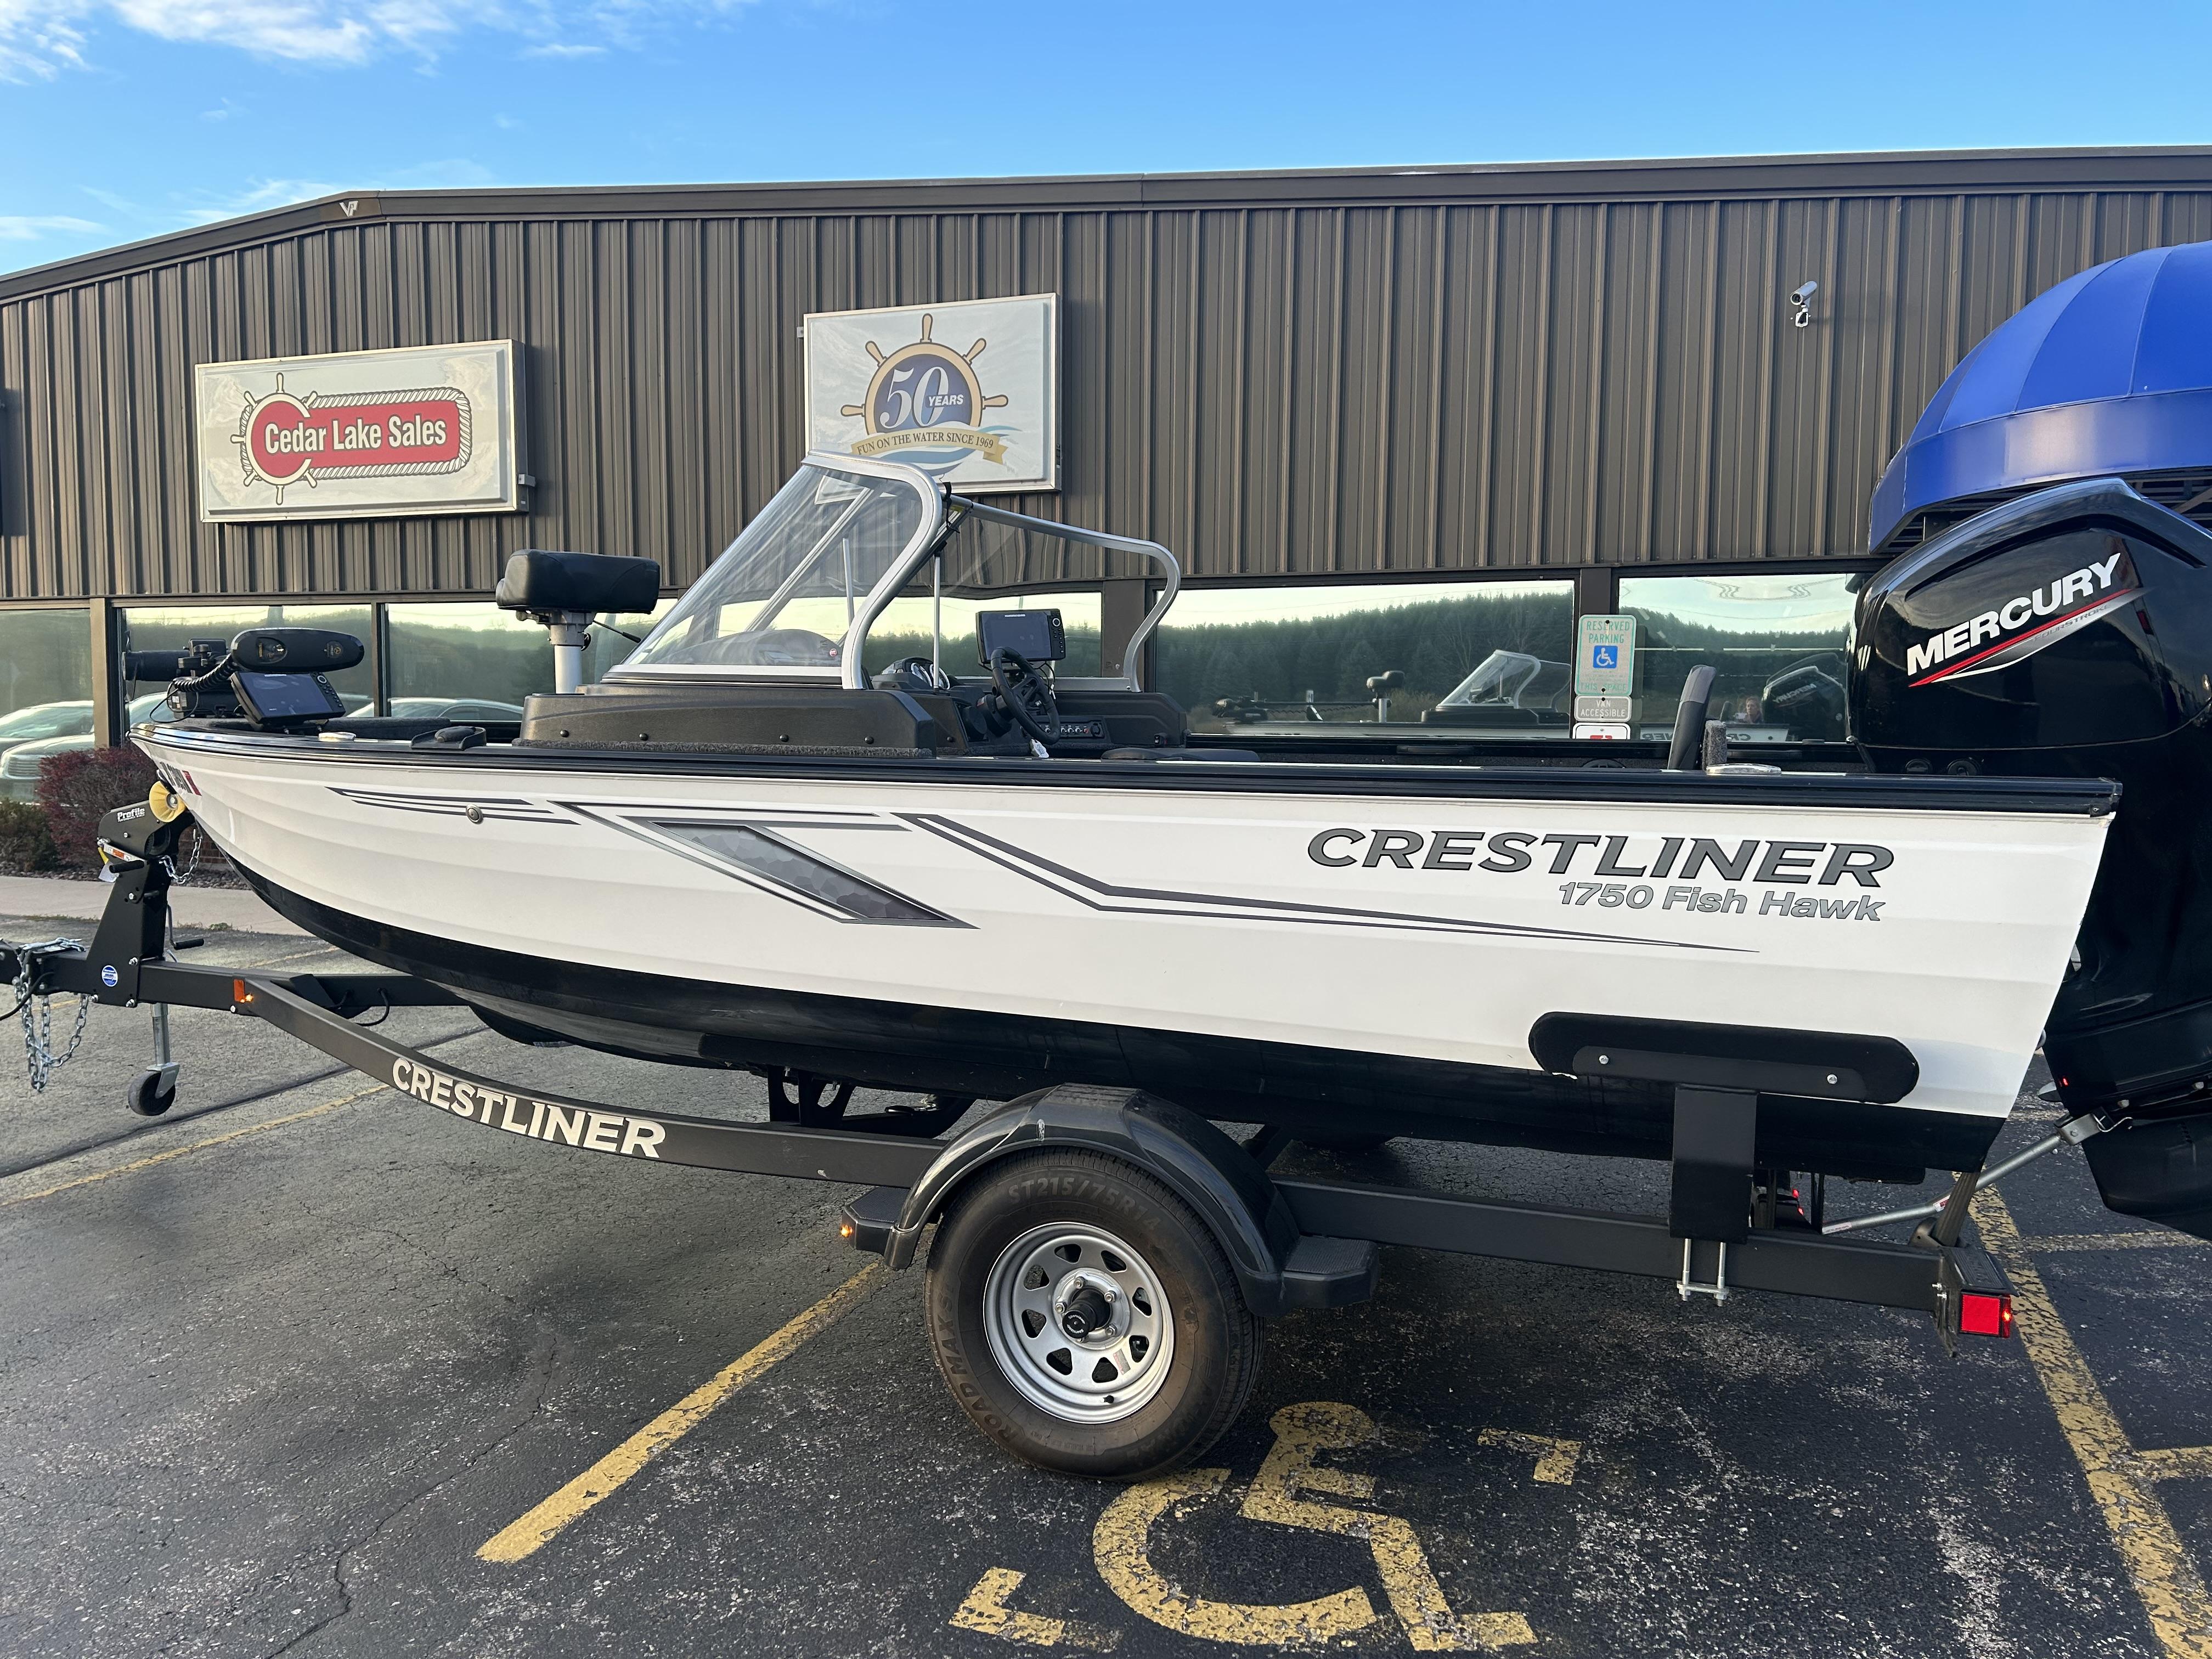 2021 Crestliner 1750 Fish Hawk, West Bend United States - boats.com